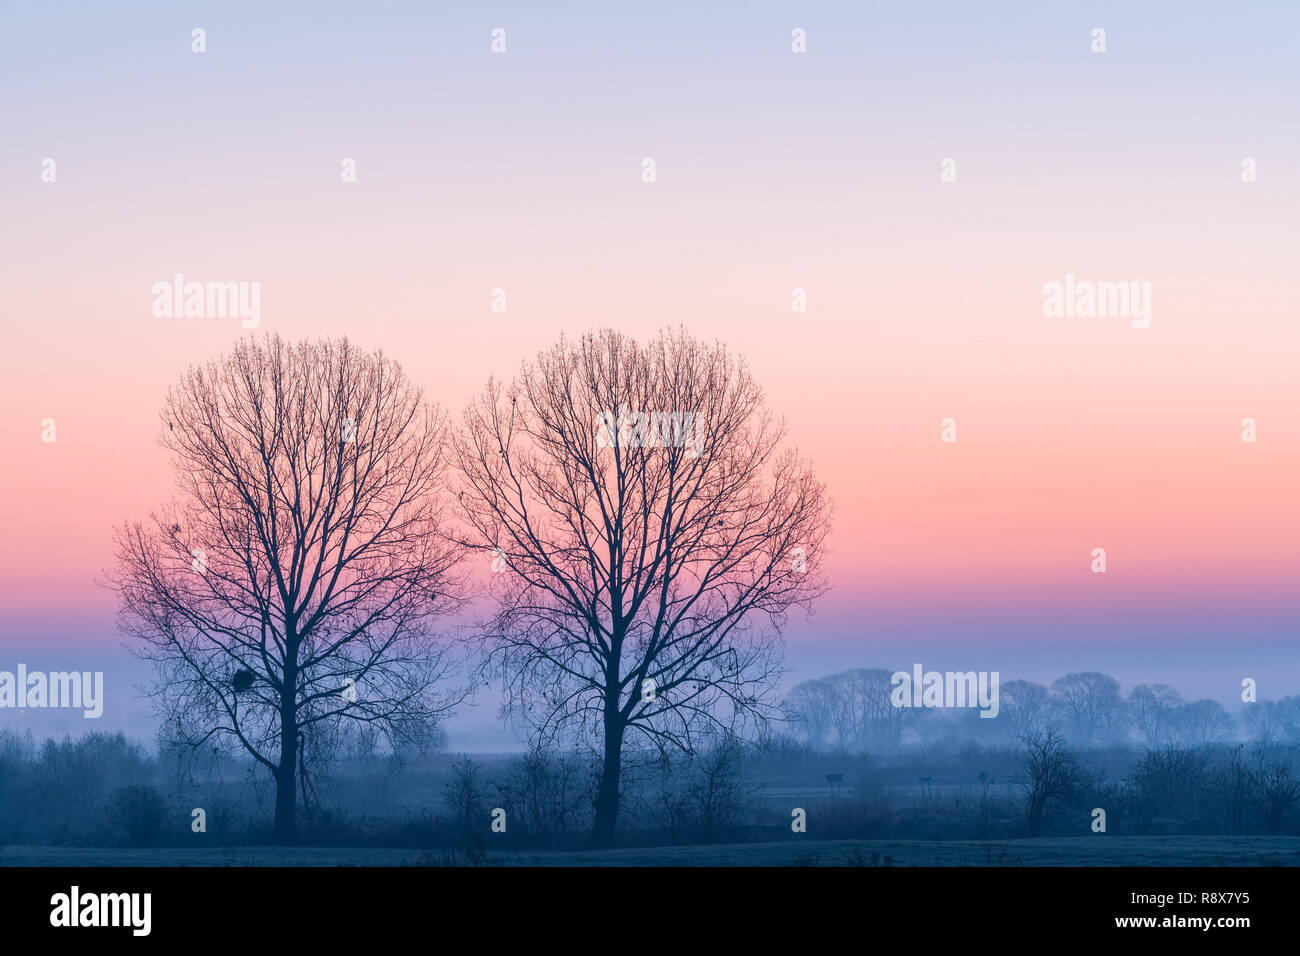 Paisaje rural minimalista con dos árboles, la niebla en un campo y coloridas en el cielo del amanecer. Foto de stock